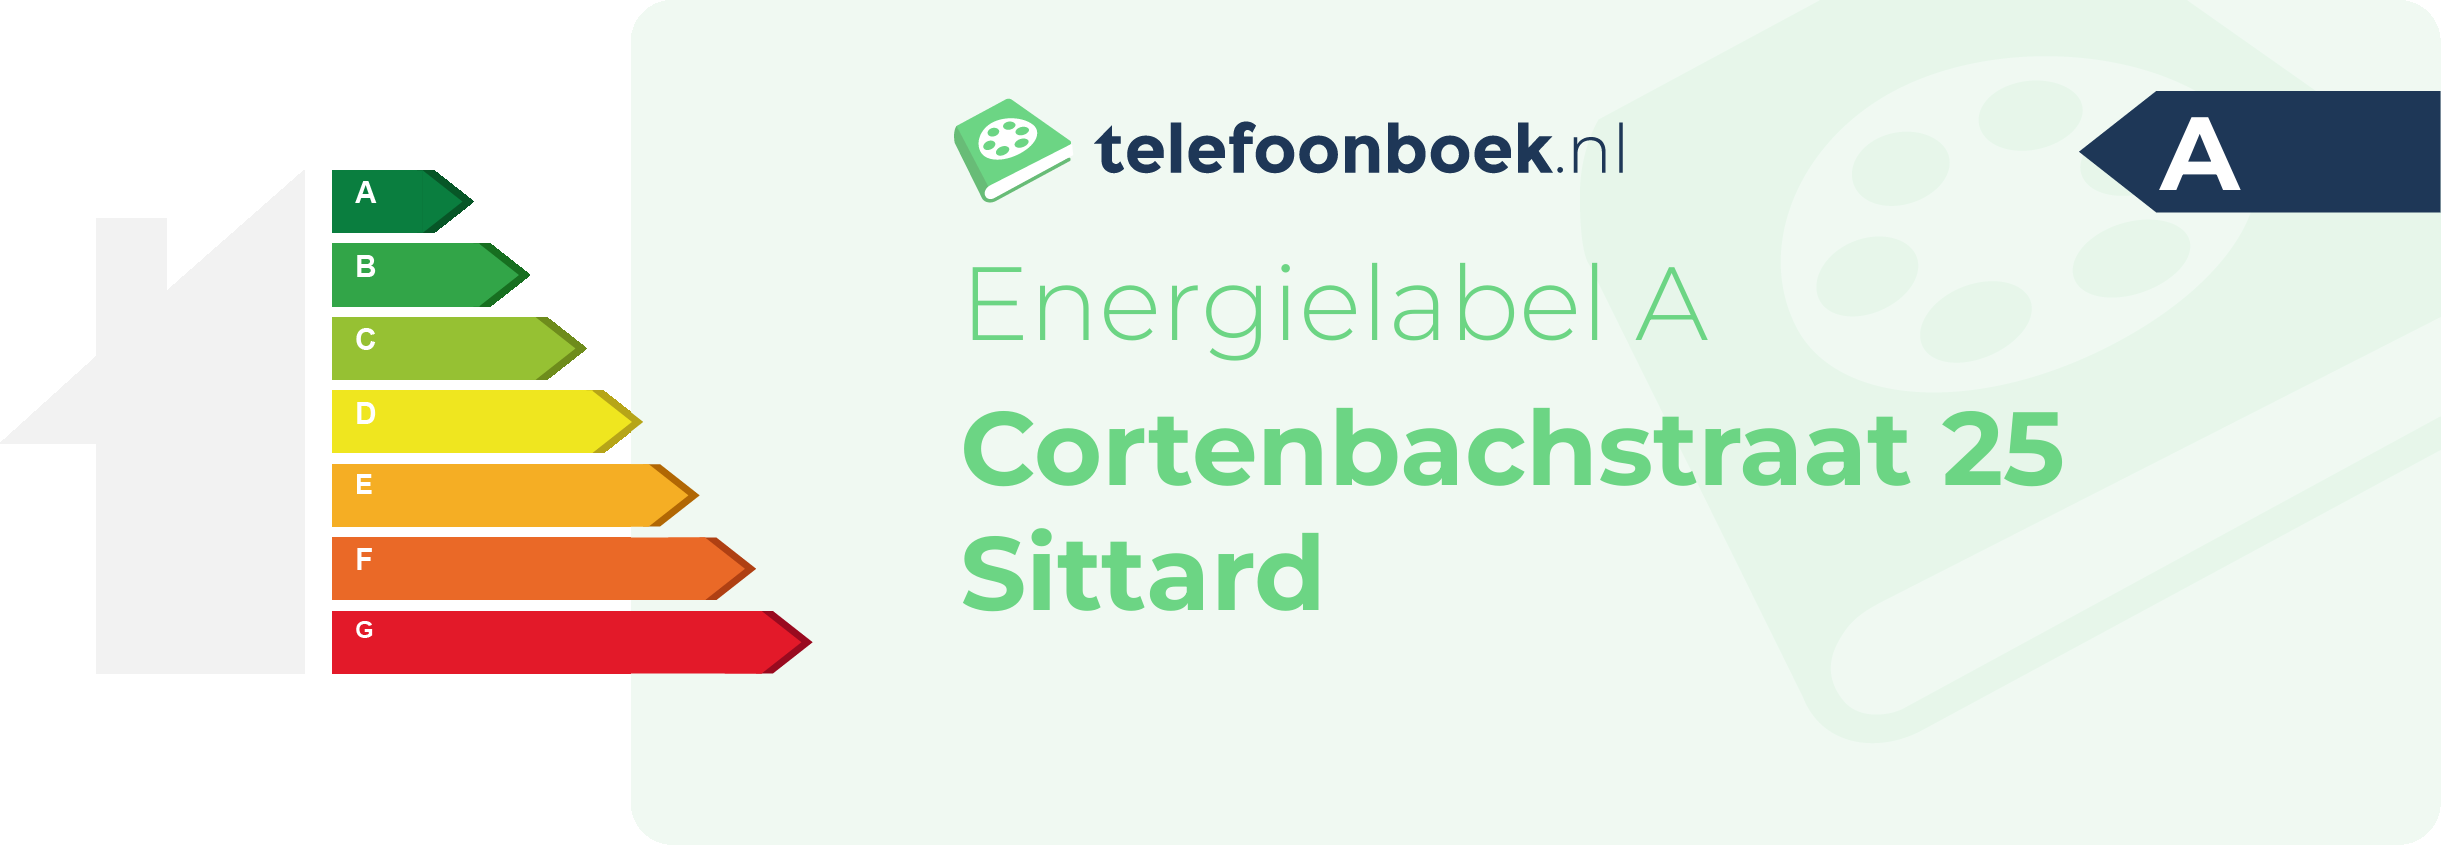 Energielabel Cortenbachstraat 25 Sittard